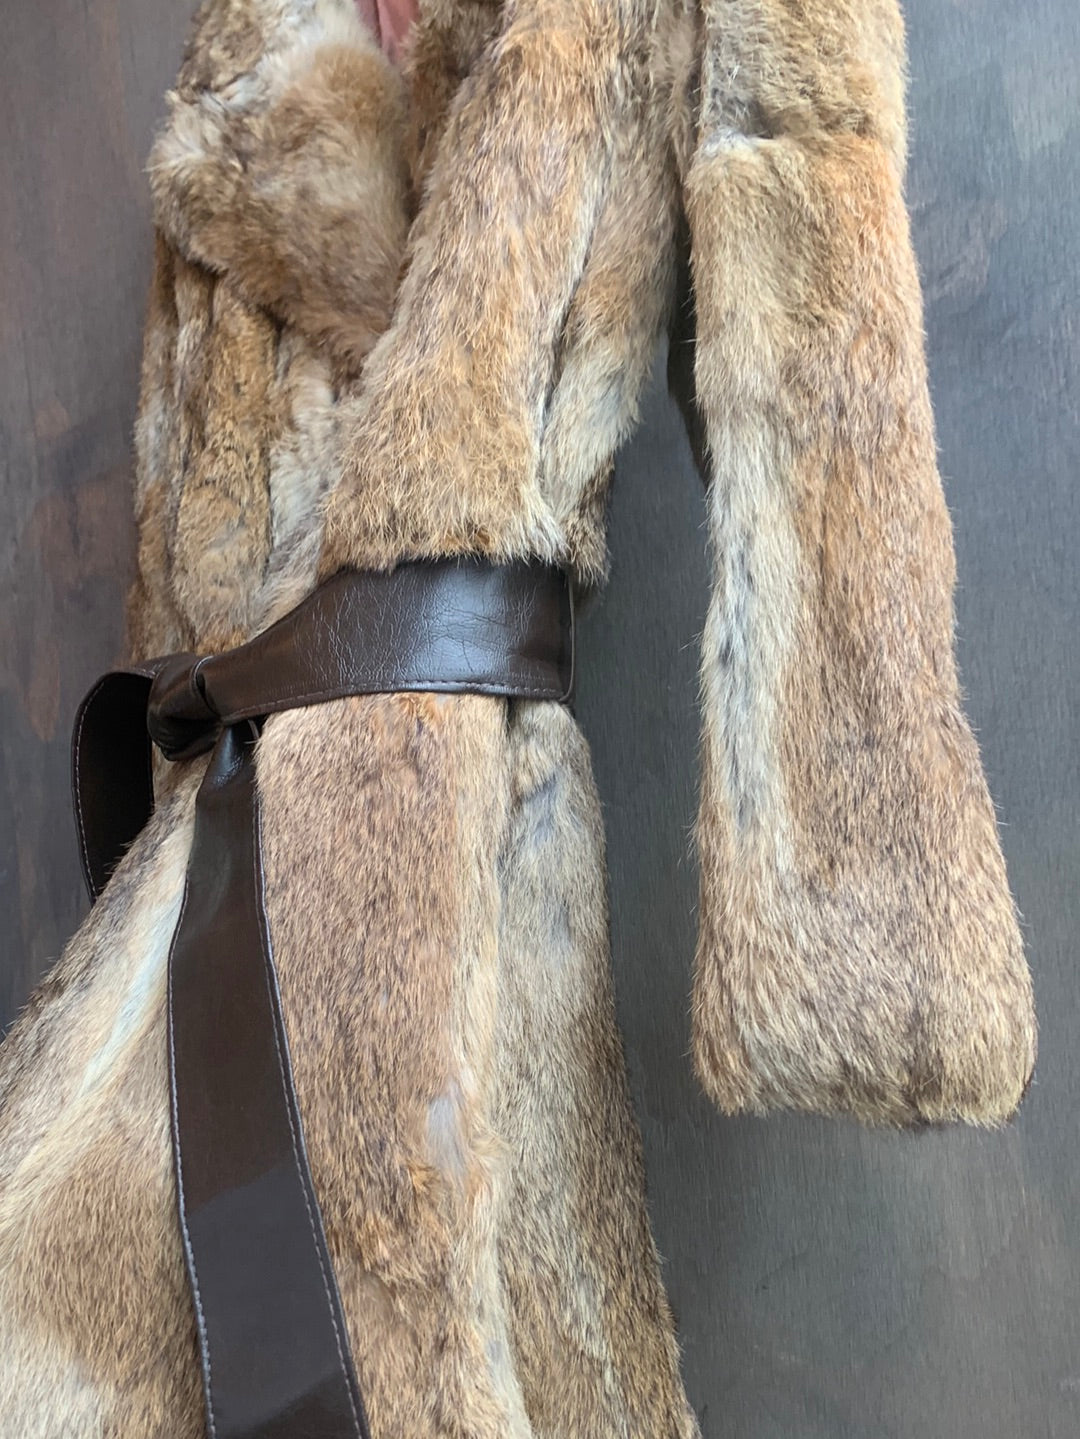 Vintage light brown fur coat with brown belt